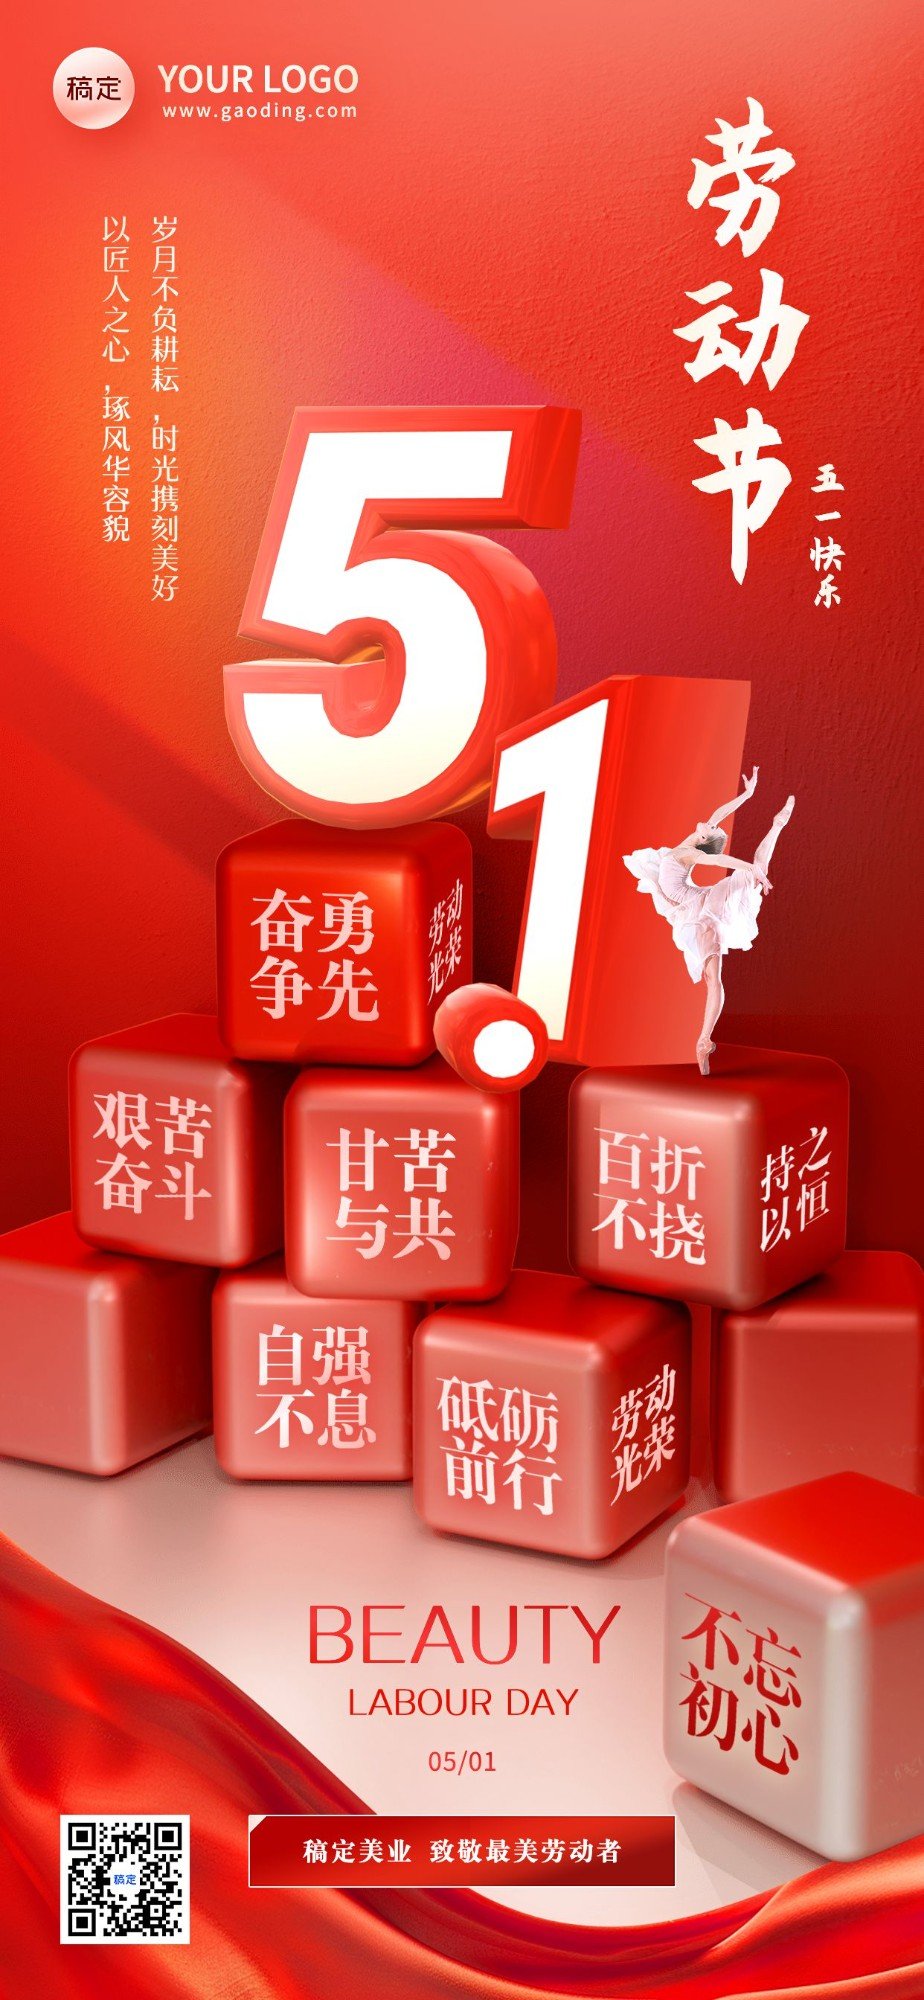 劳动节美业美容院节日祝福3D创意全屏竖版海报aigc